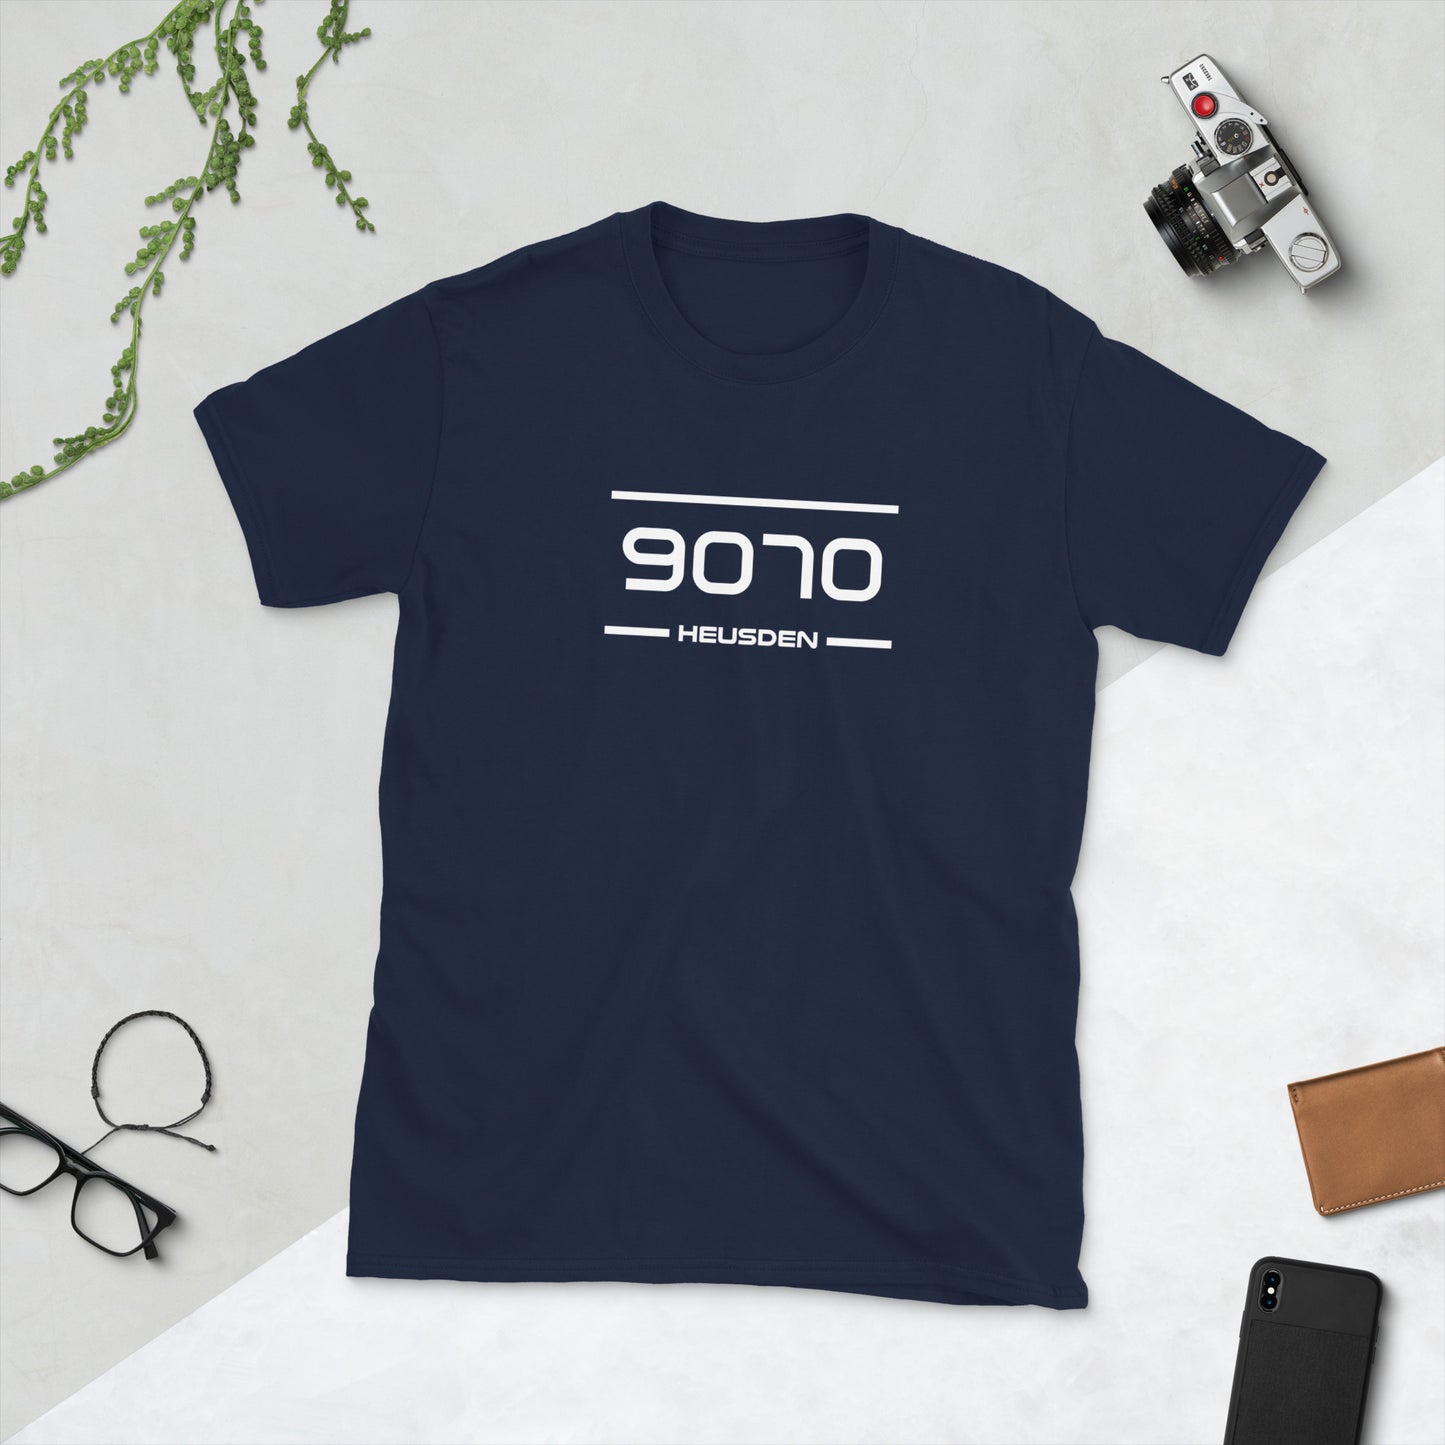 T-Shirt - 9070 - Heusden